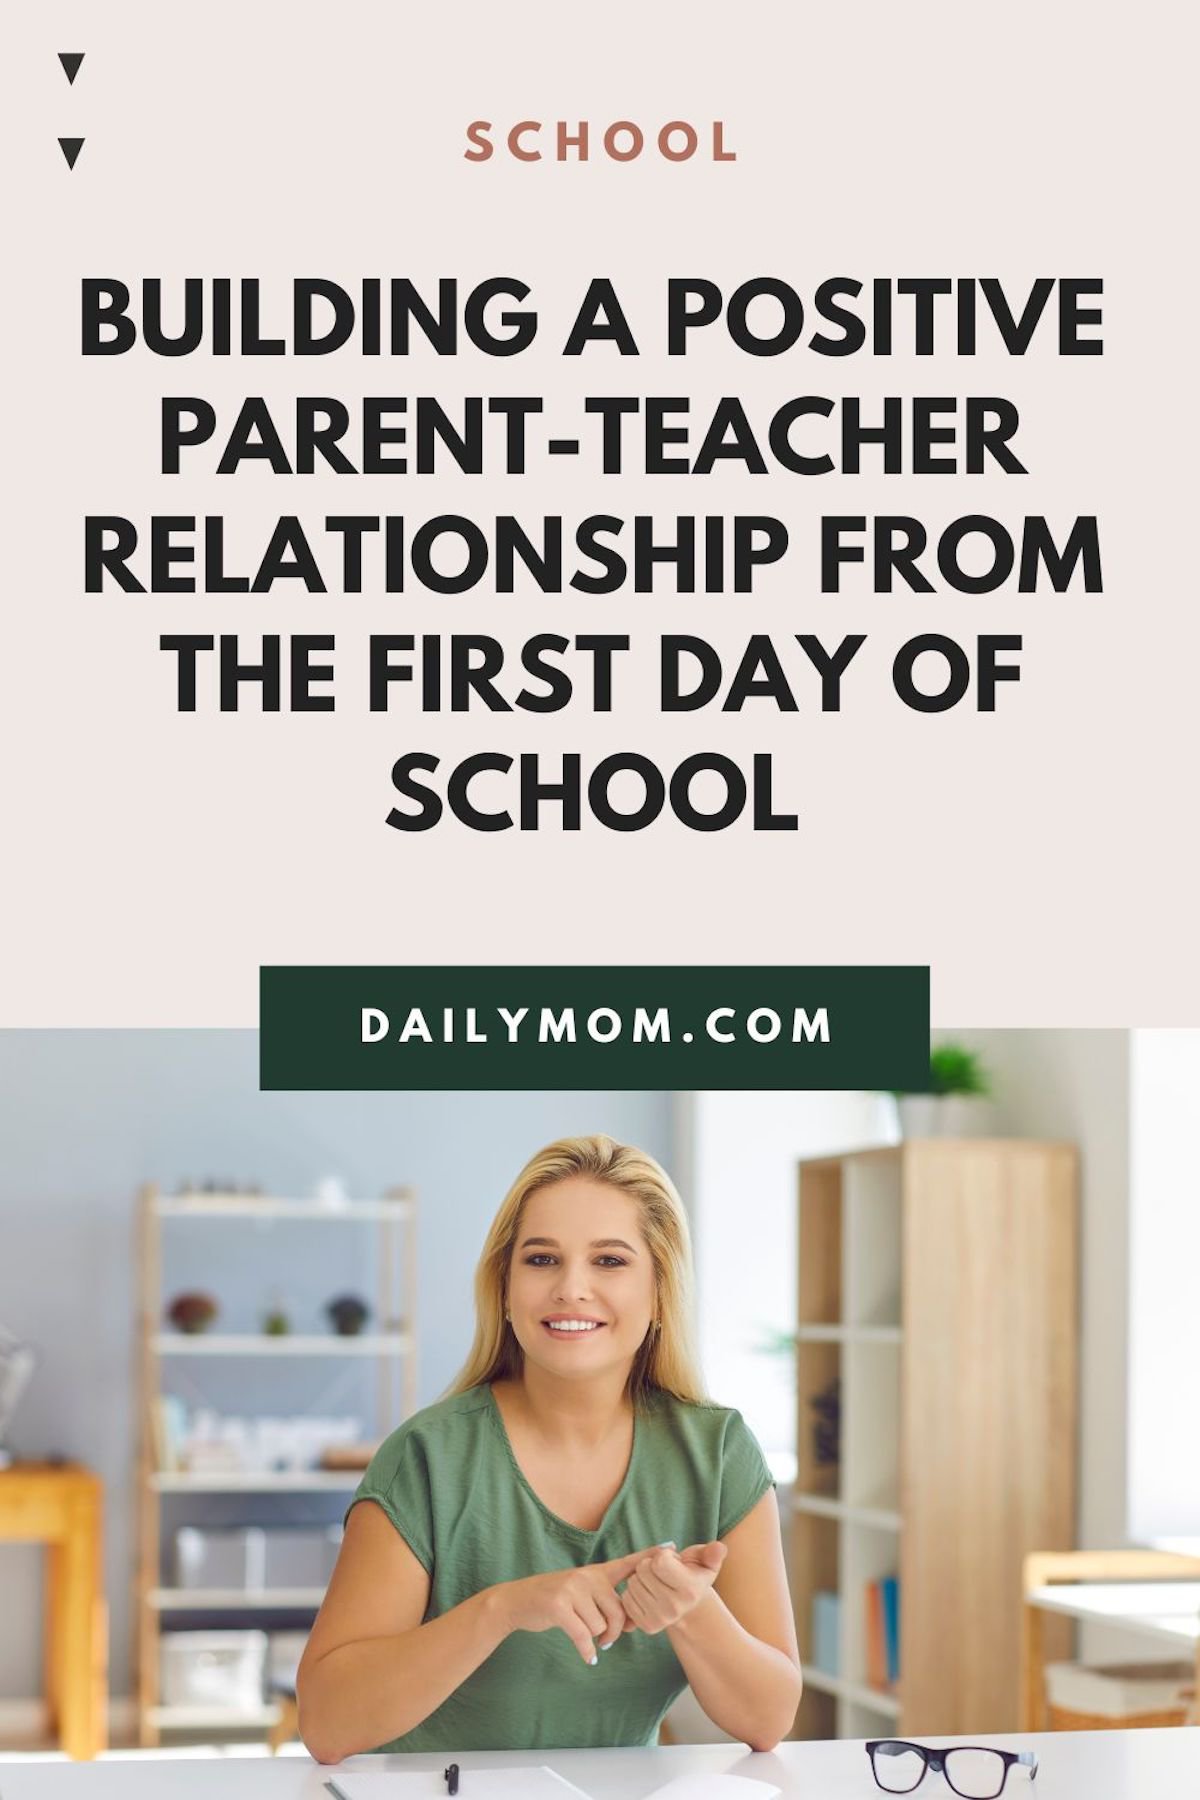 Daily Mom Parent Portal Parent-Teacher